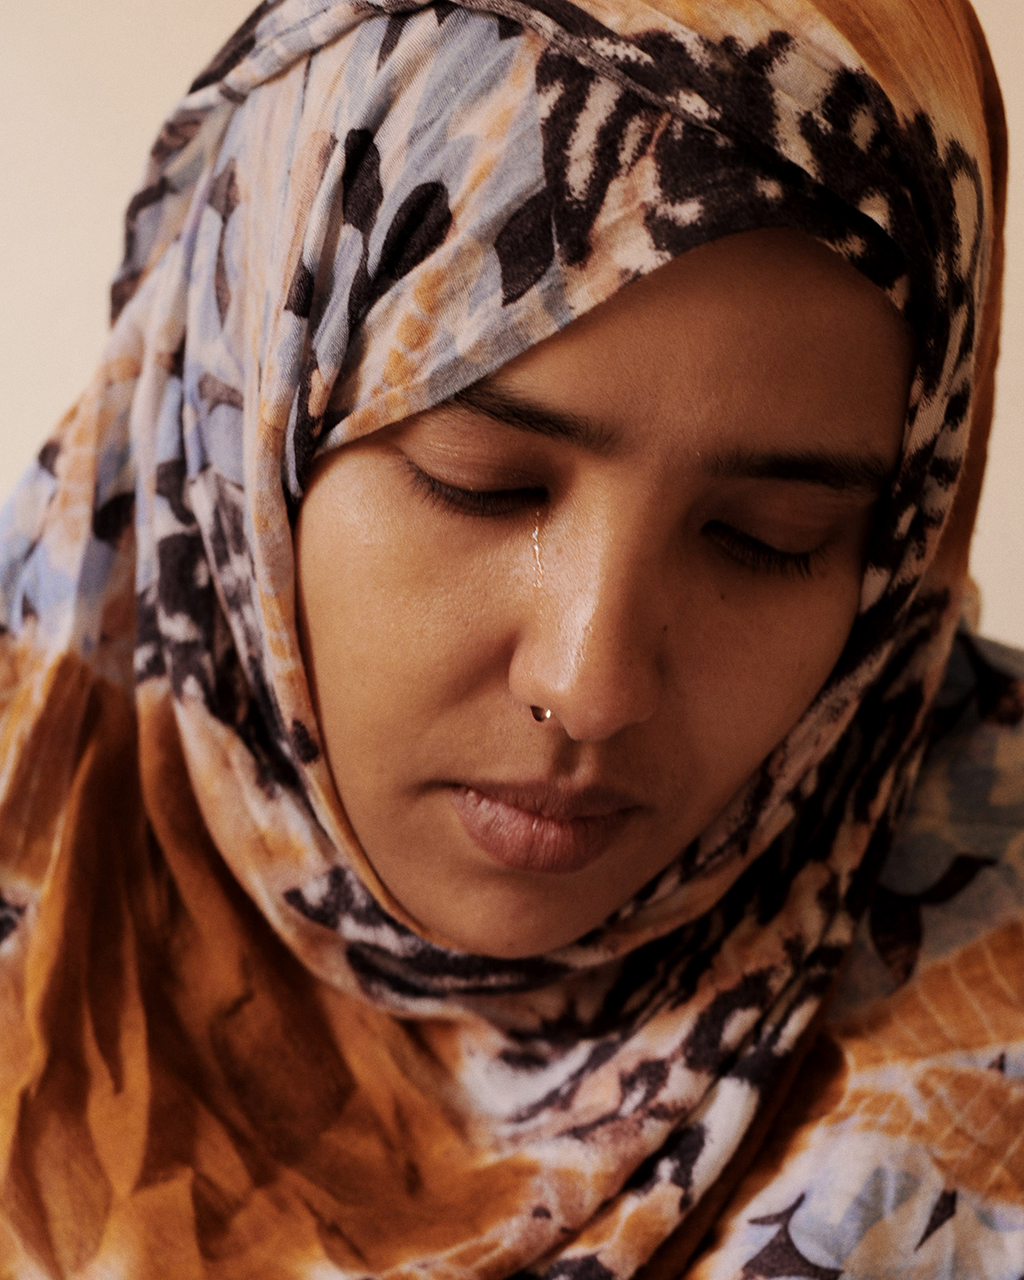 Foto di Simona Ghizzoni (Contrasto). Laayoune, Sahara Occidentale, 2012, Leila Dambar, sorella di Said Dambar, ucciso nel 2010 dalla polizia marocchina. - 2012-10-08-ghizzoni_05